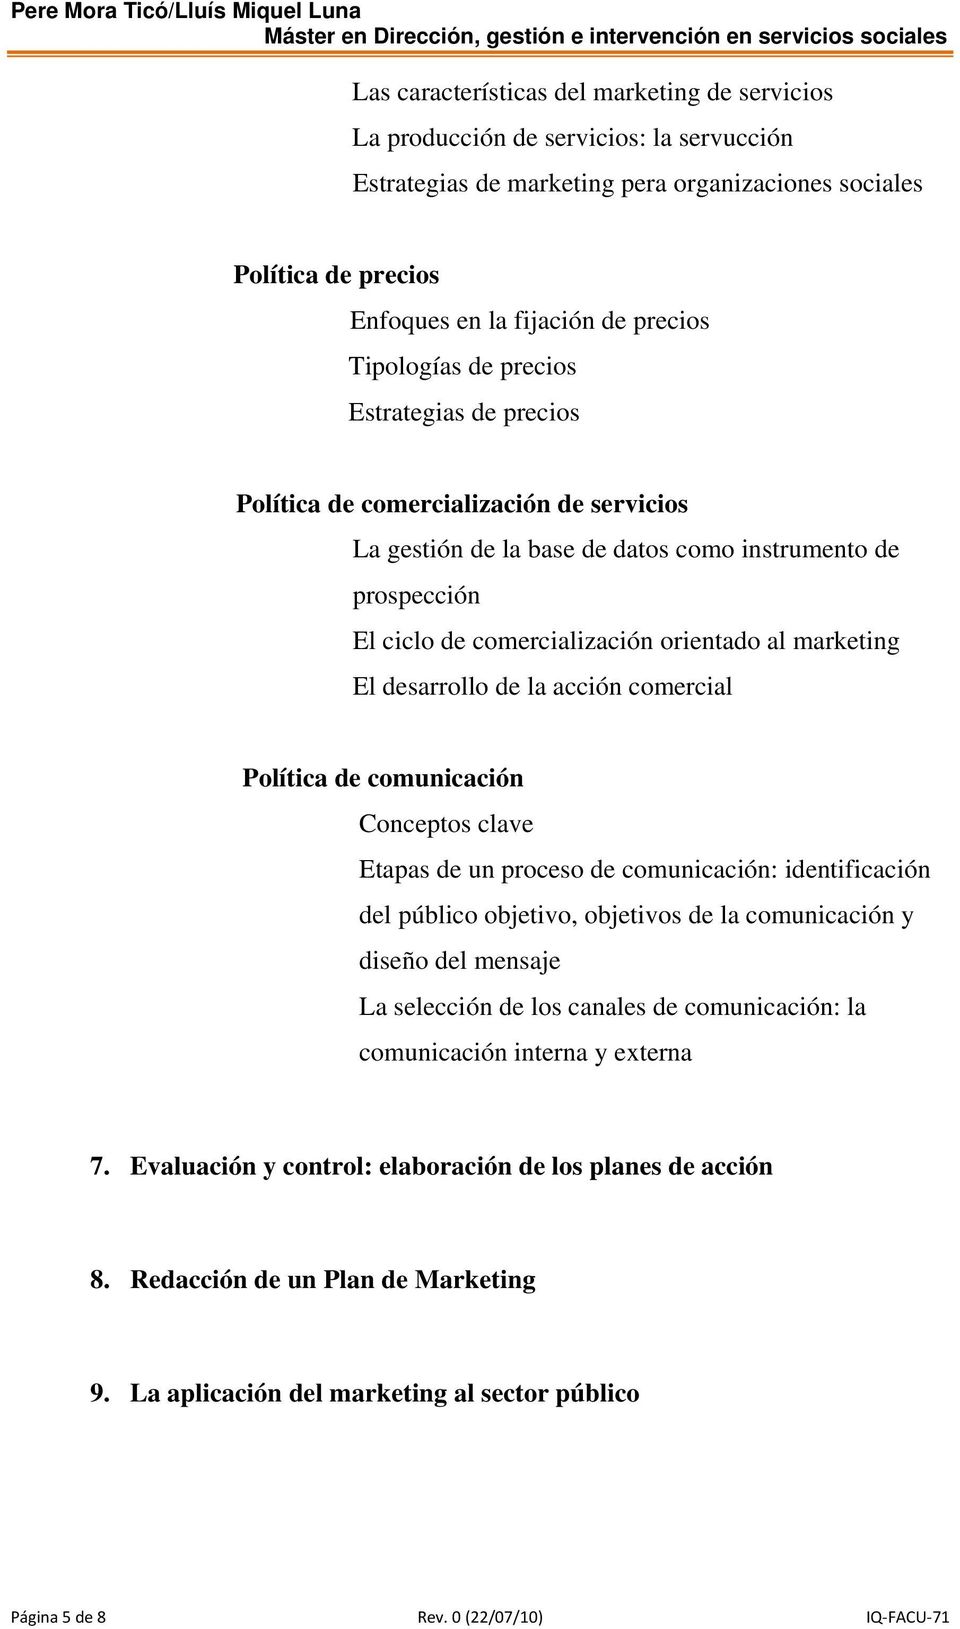 marketing El desarrollo de la acción comercial Política de comunicación Conceptos clave Etapas de un proceso de comunicación: identificación del público objetivo, objetivos de la comunicación y